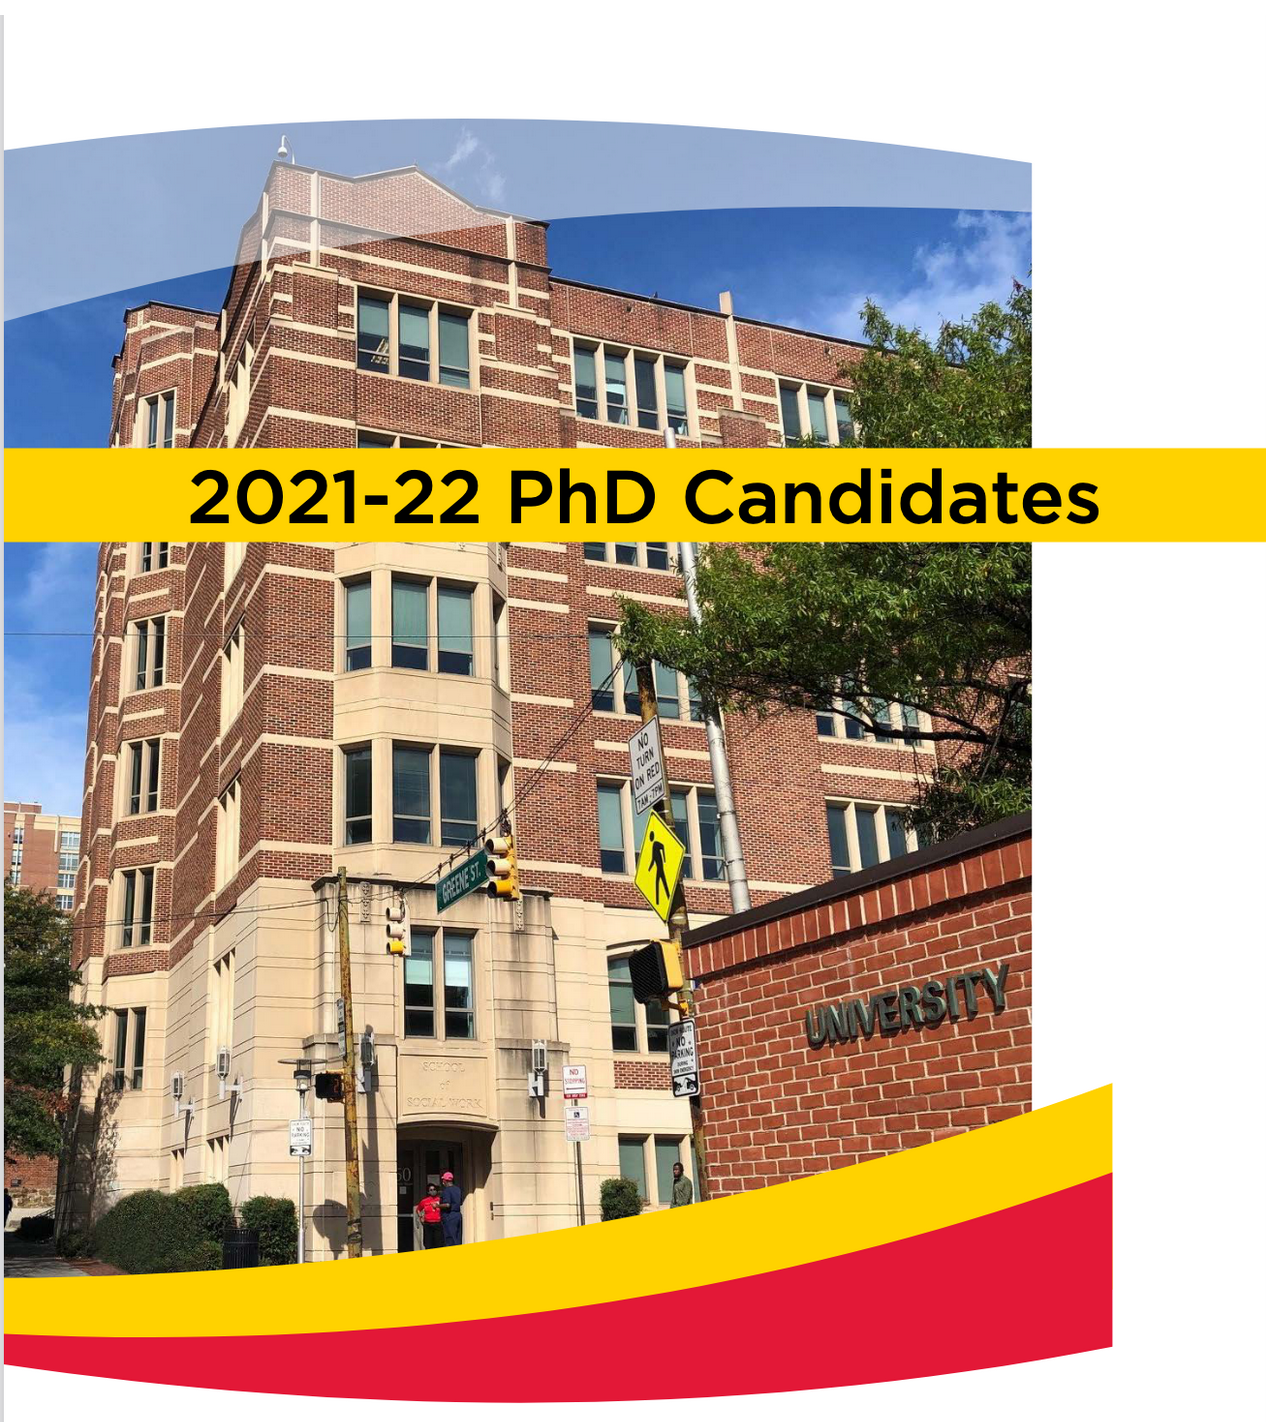 SSW PhD candidates viewbook